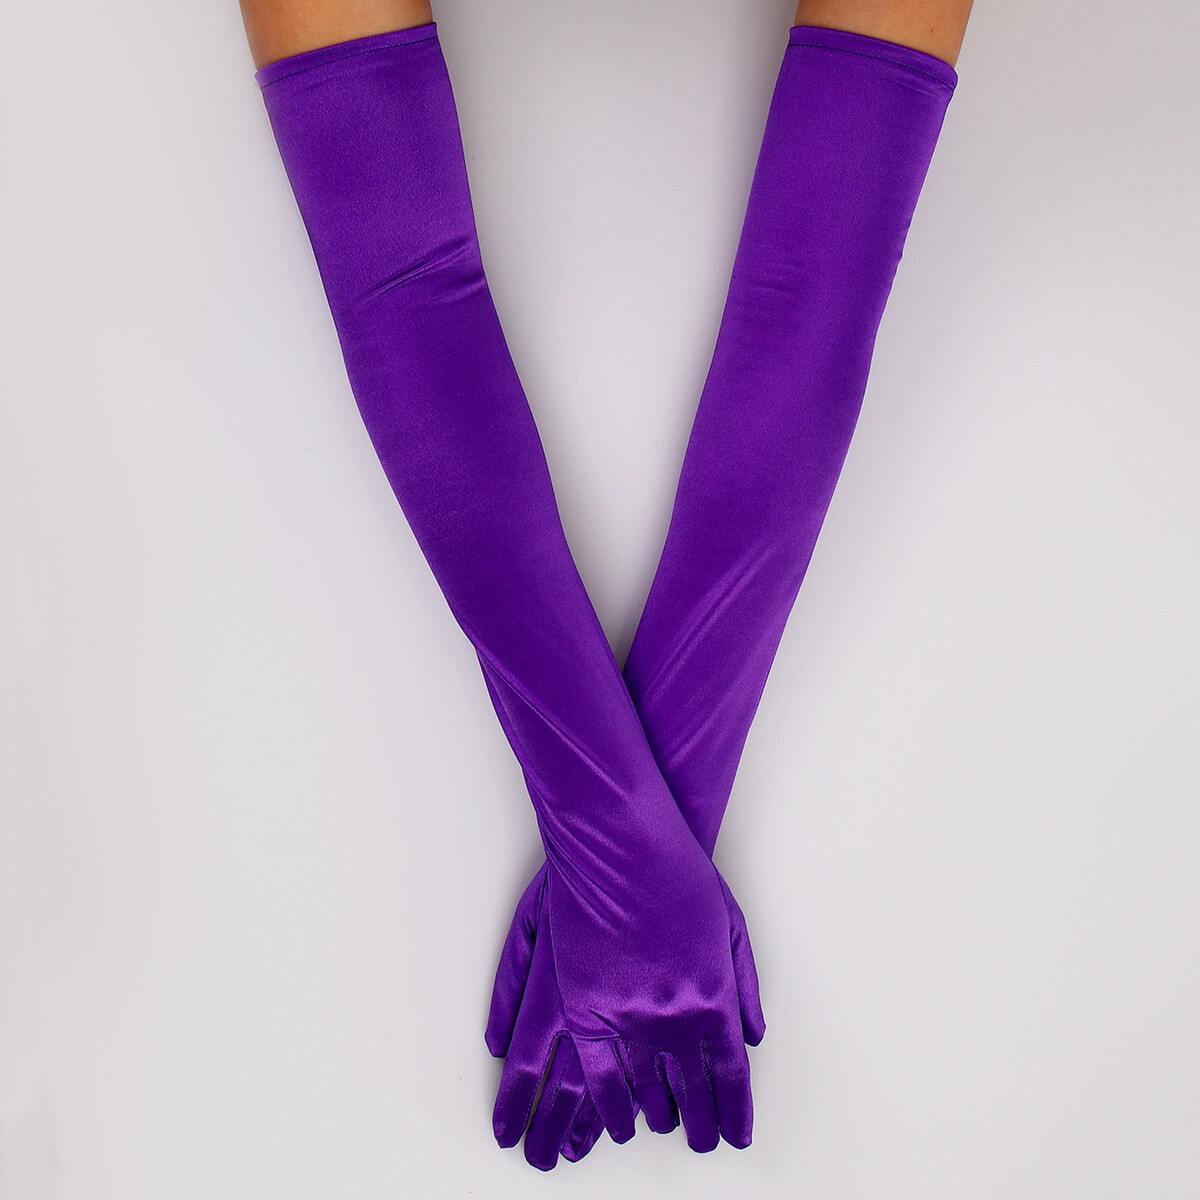 Карнавальный аксессуар - перчатки 55см, цвет фиолетовый карнавальный плащ детский атлас фиолетовый длина 85 см